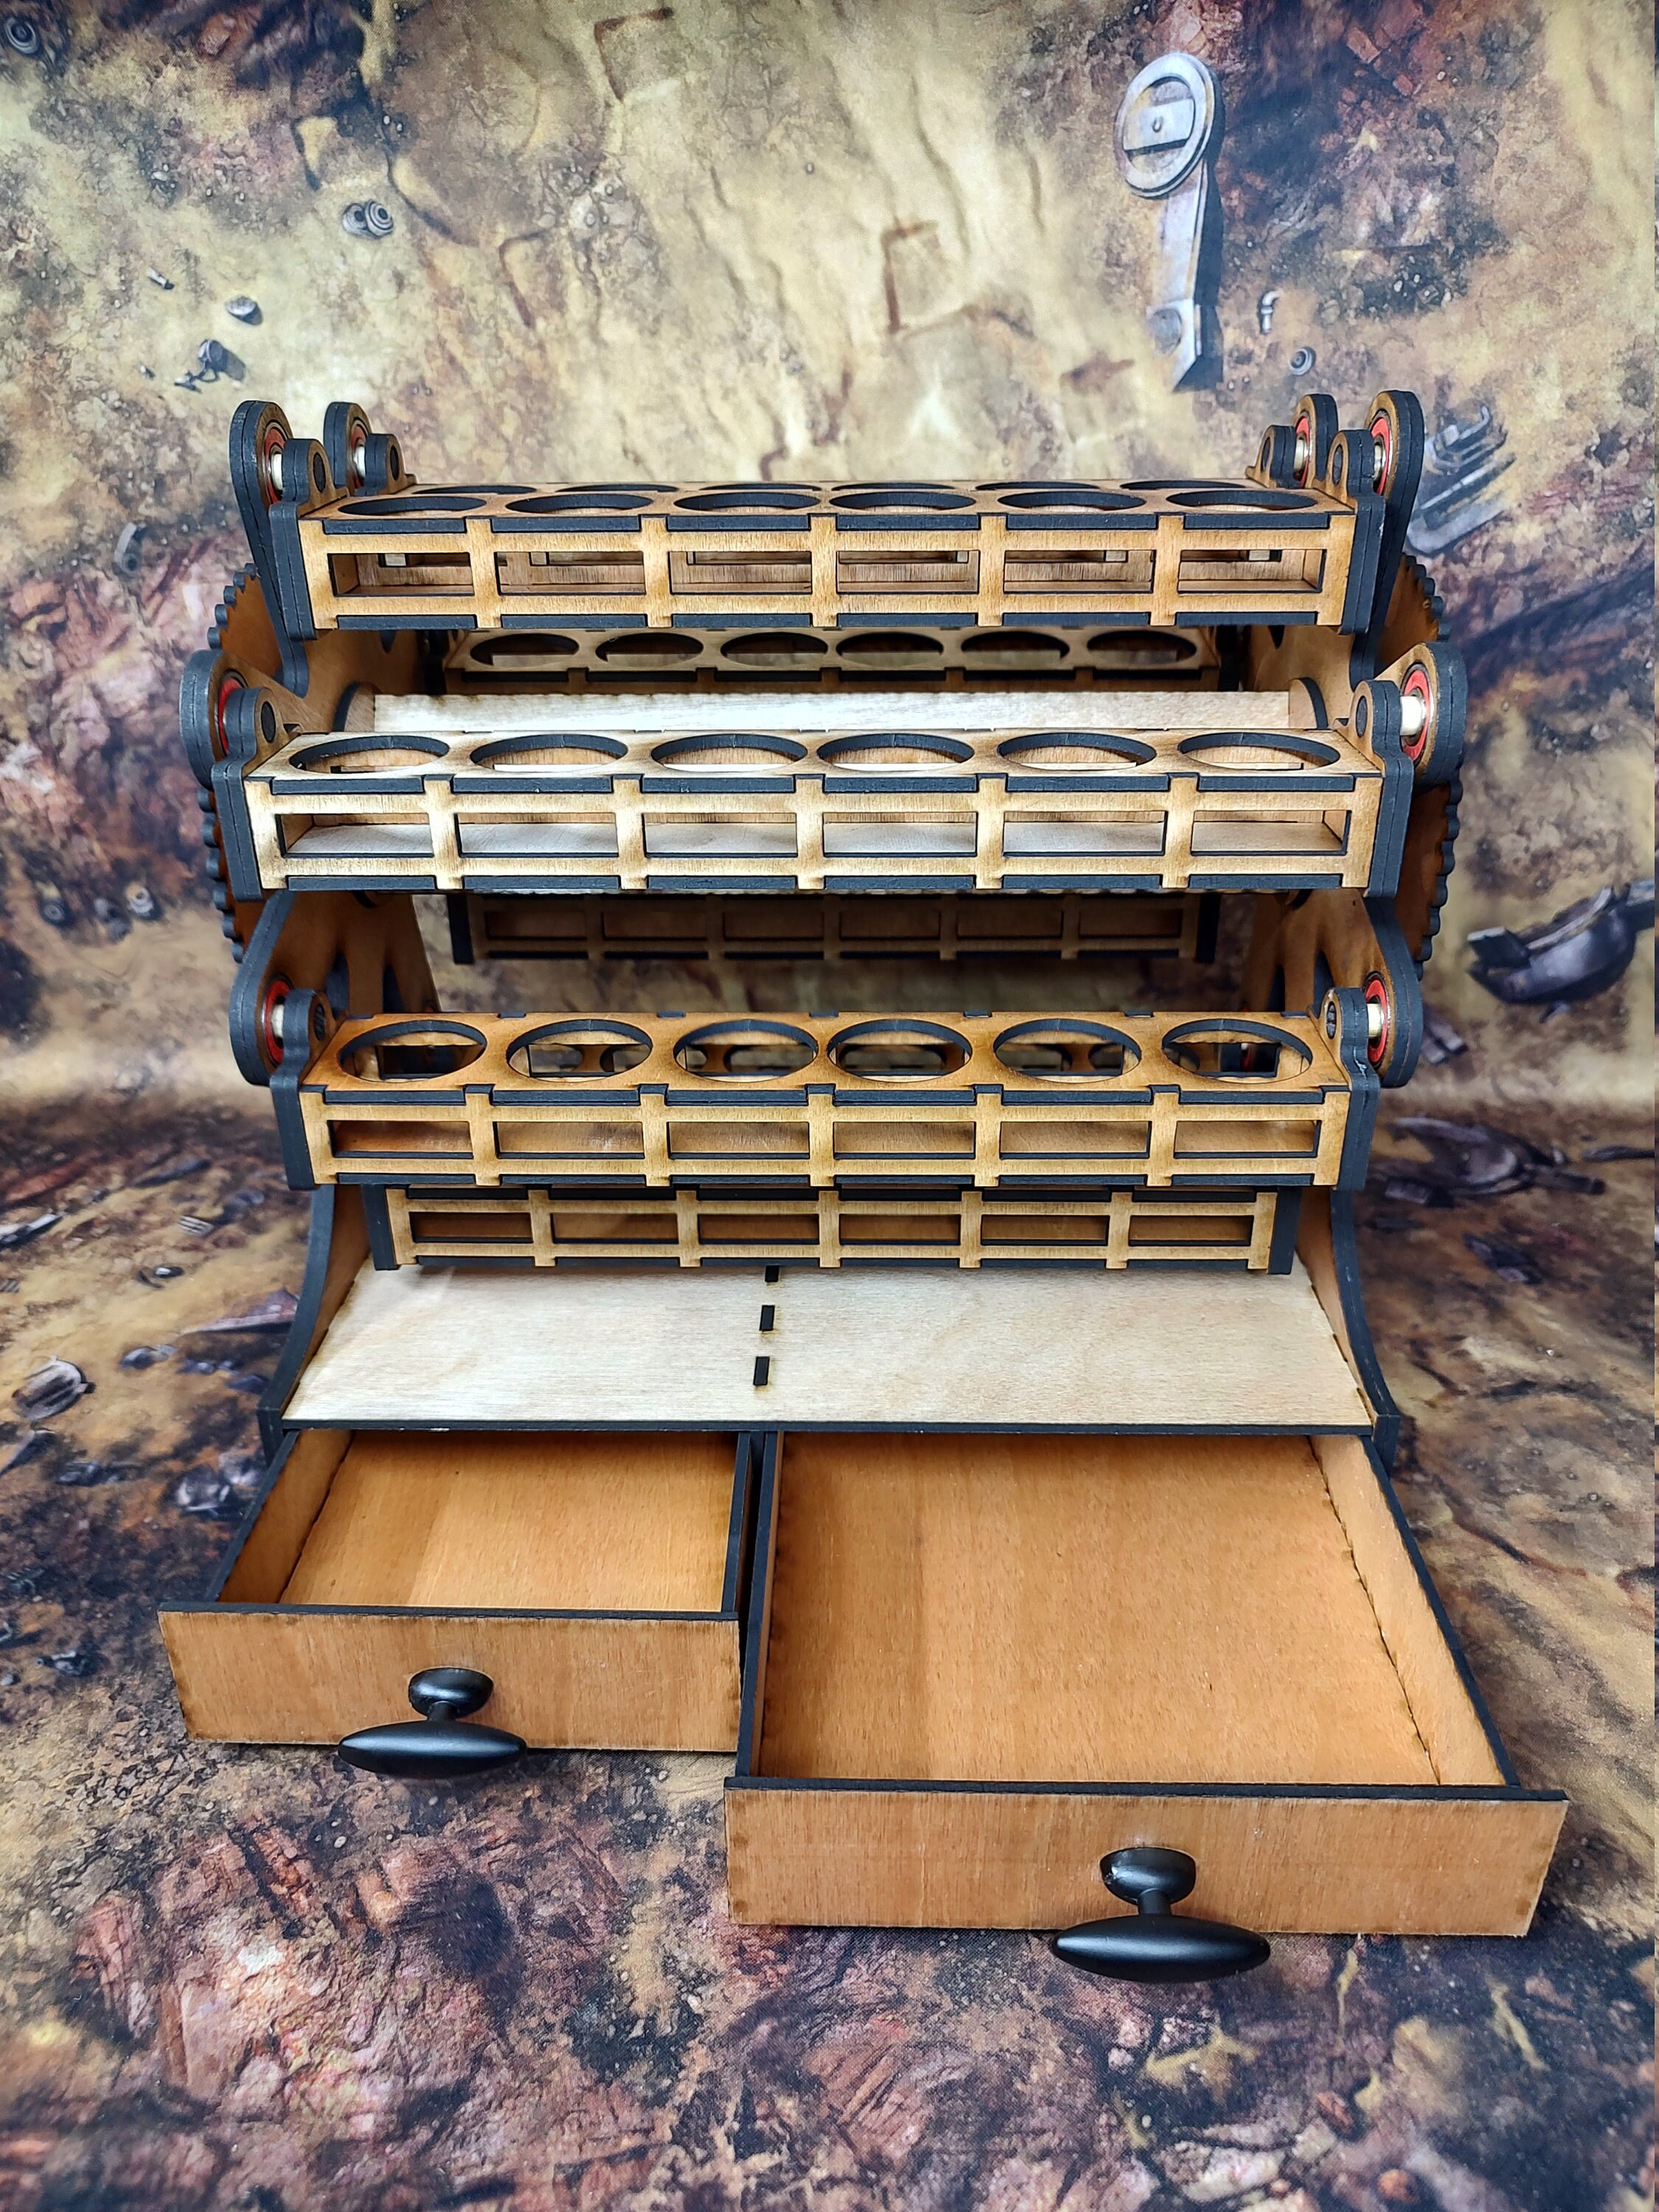 Carousel Paint Storage Rack for 48 Paints -   Paint storage, Laser cut  wood crafts, Paint rack